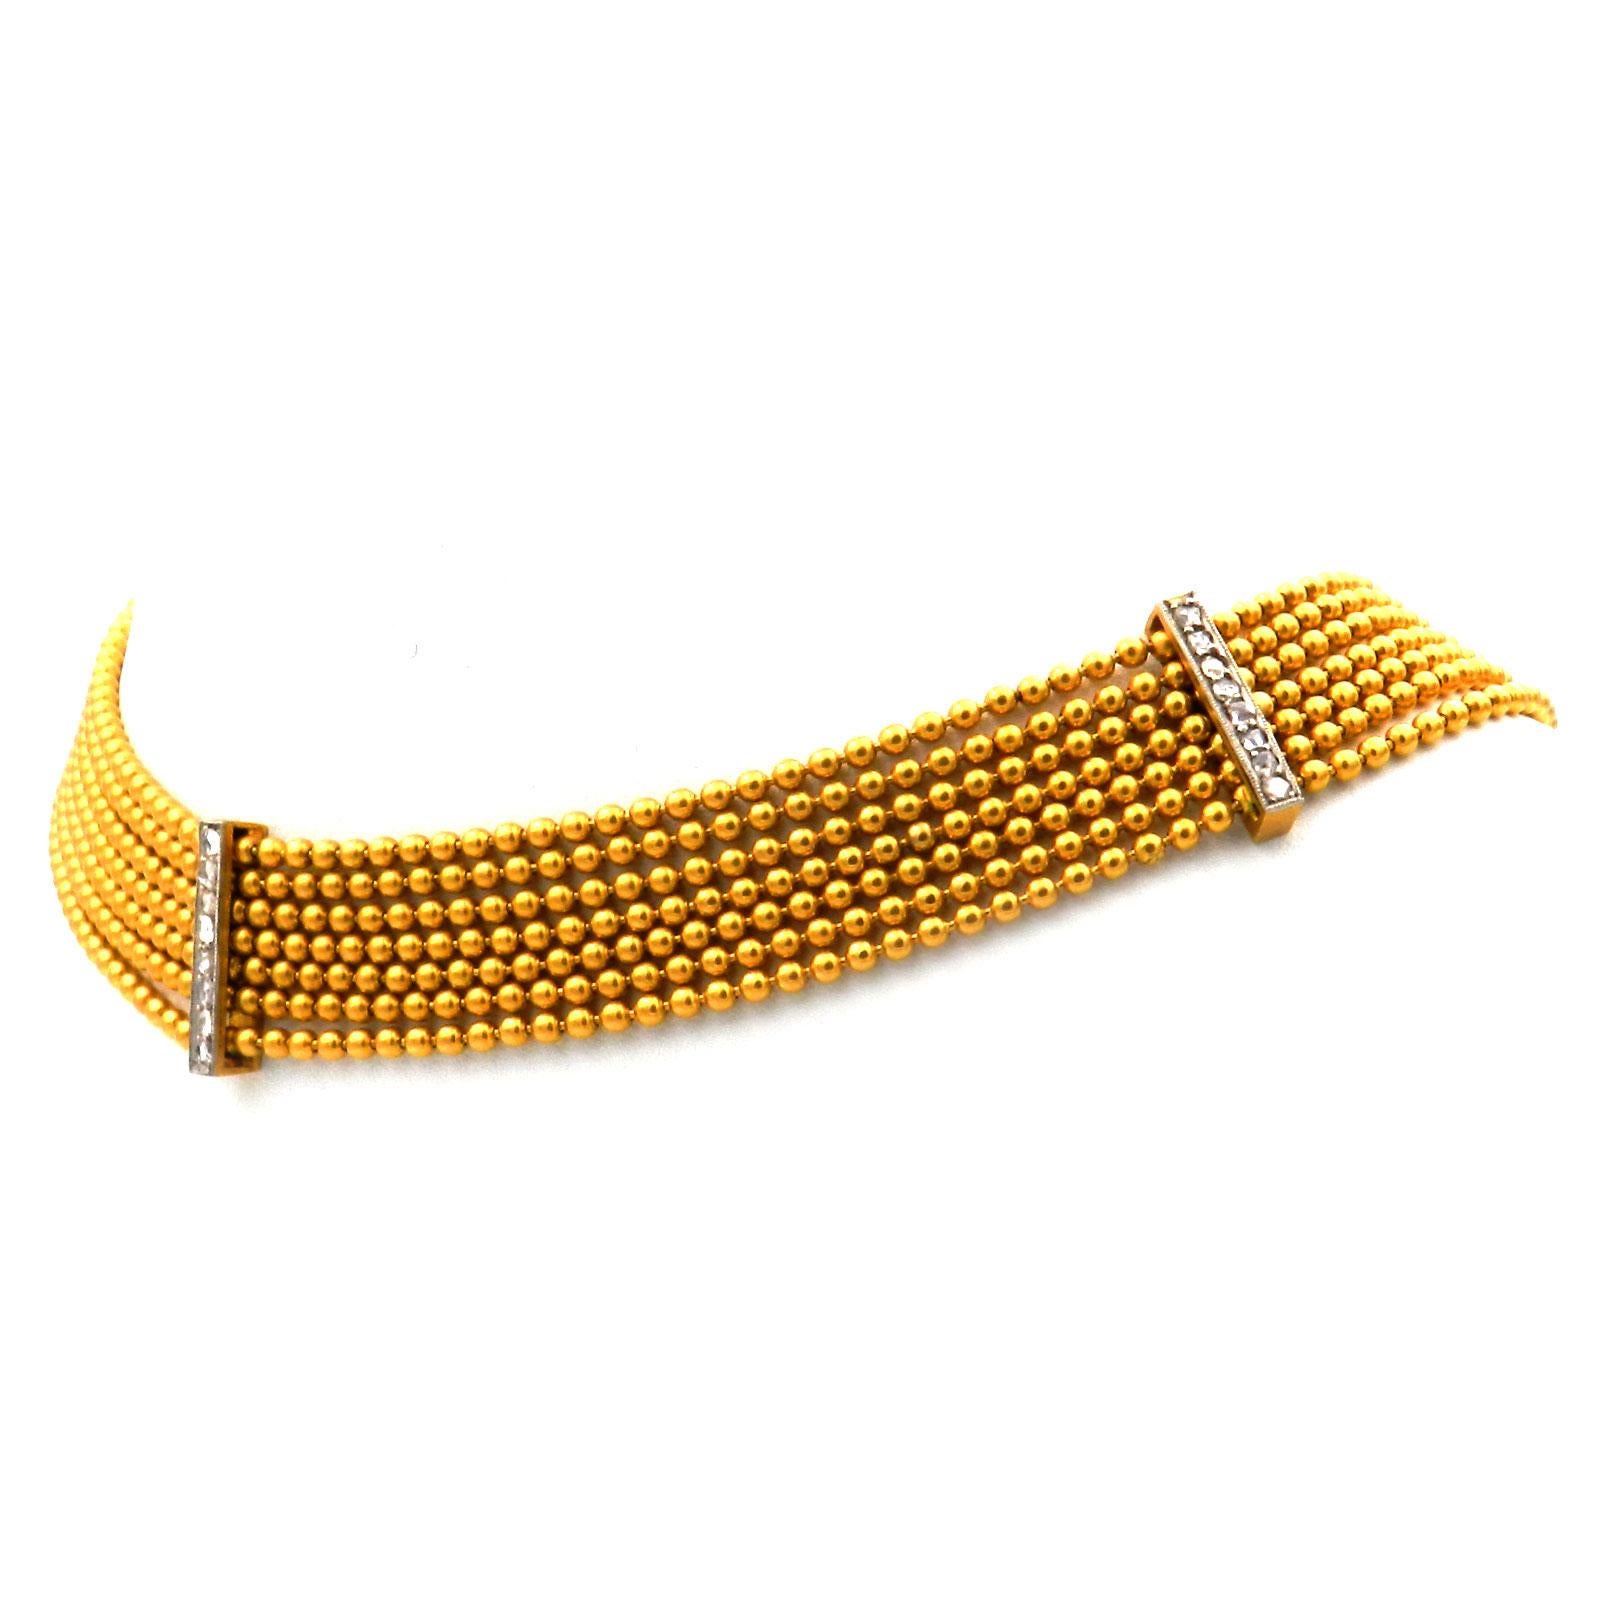 Art Deco 14K Gold Diamant Collier de Chien Choker Halskette um 1910

Diese Halskette, die sich eng um den Hals schmiegt, zeichnet sich durch einzigartige Eleganz und besondere Handwerkskunst aus. Sie besteht aus sieben Corden mit kleinen Goldperlen